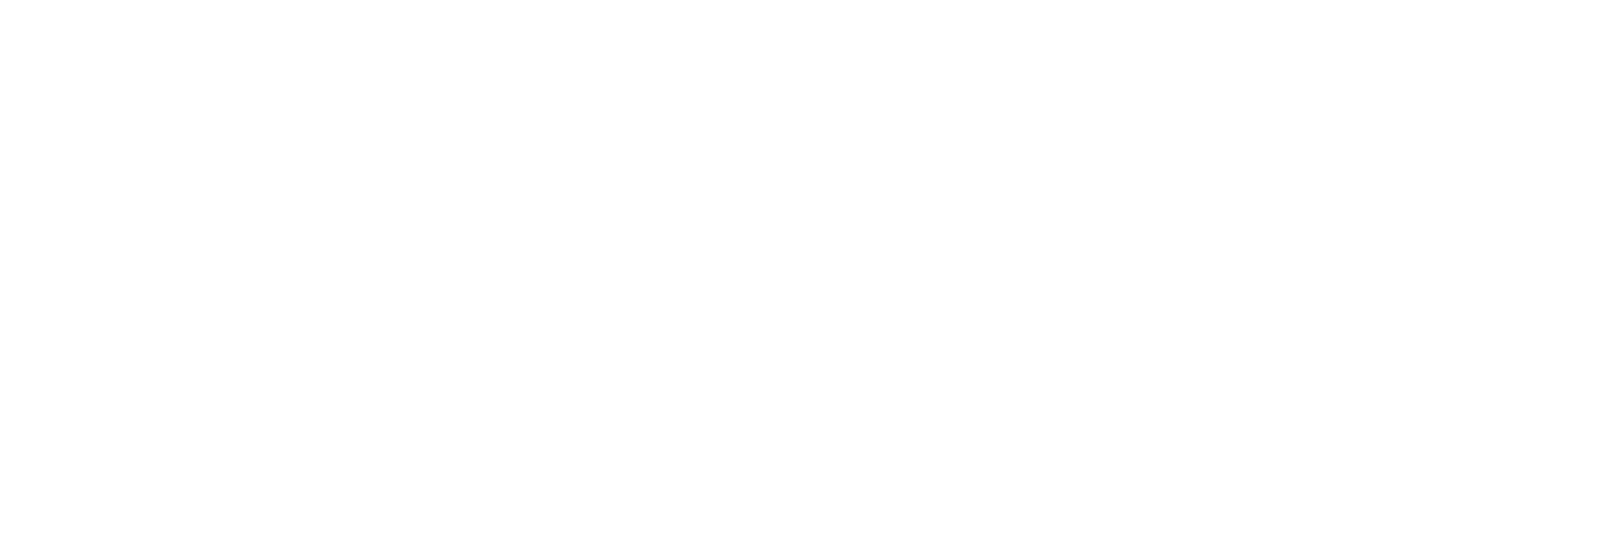 Semapa Logo groß für dunkle Hintergründe (transparentes PNG)